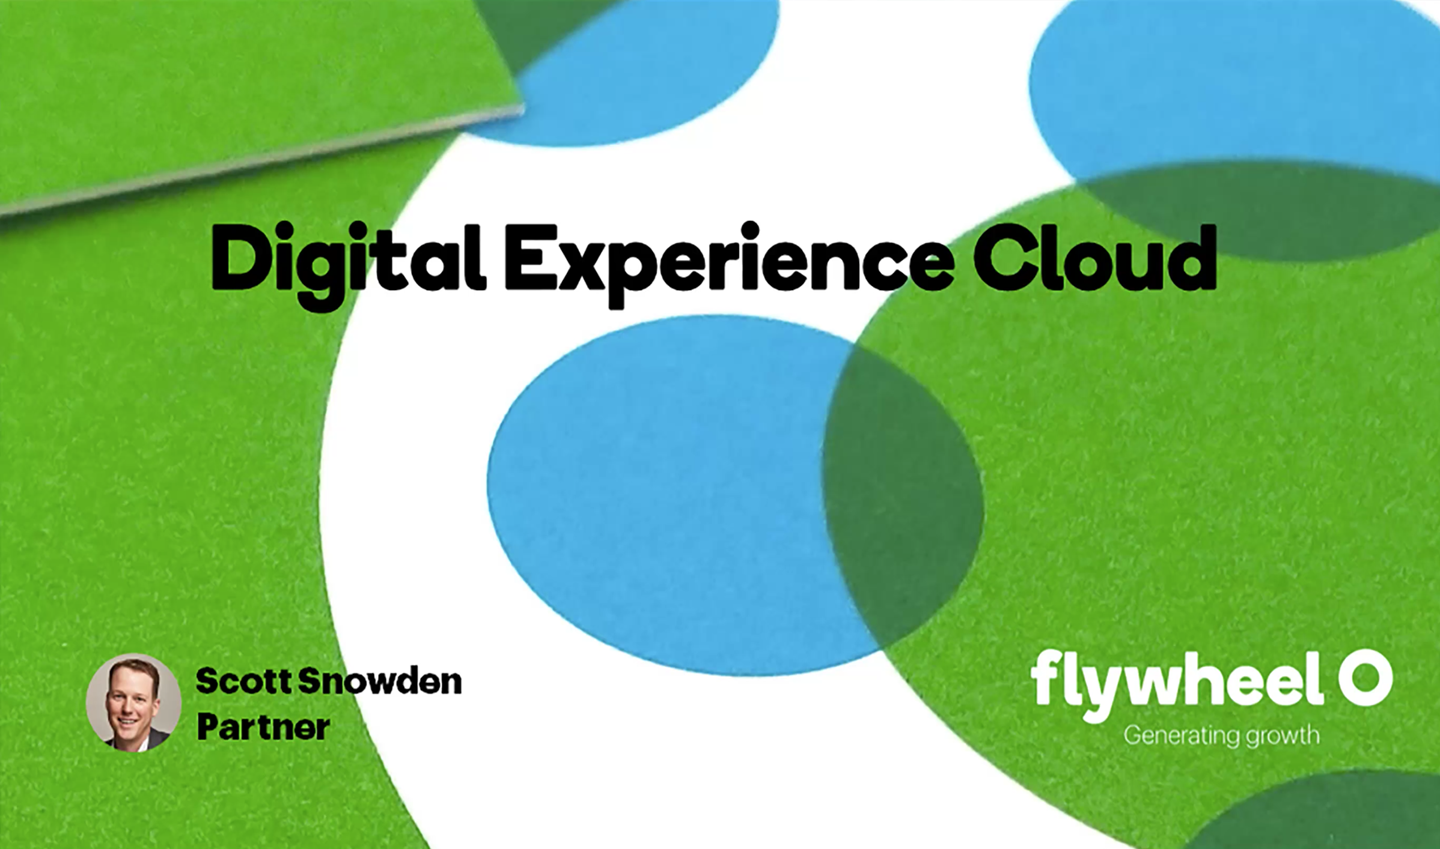 Digital Experience Cloud Walkthrough - Video by Flywheel Strategic